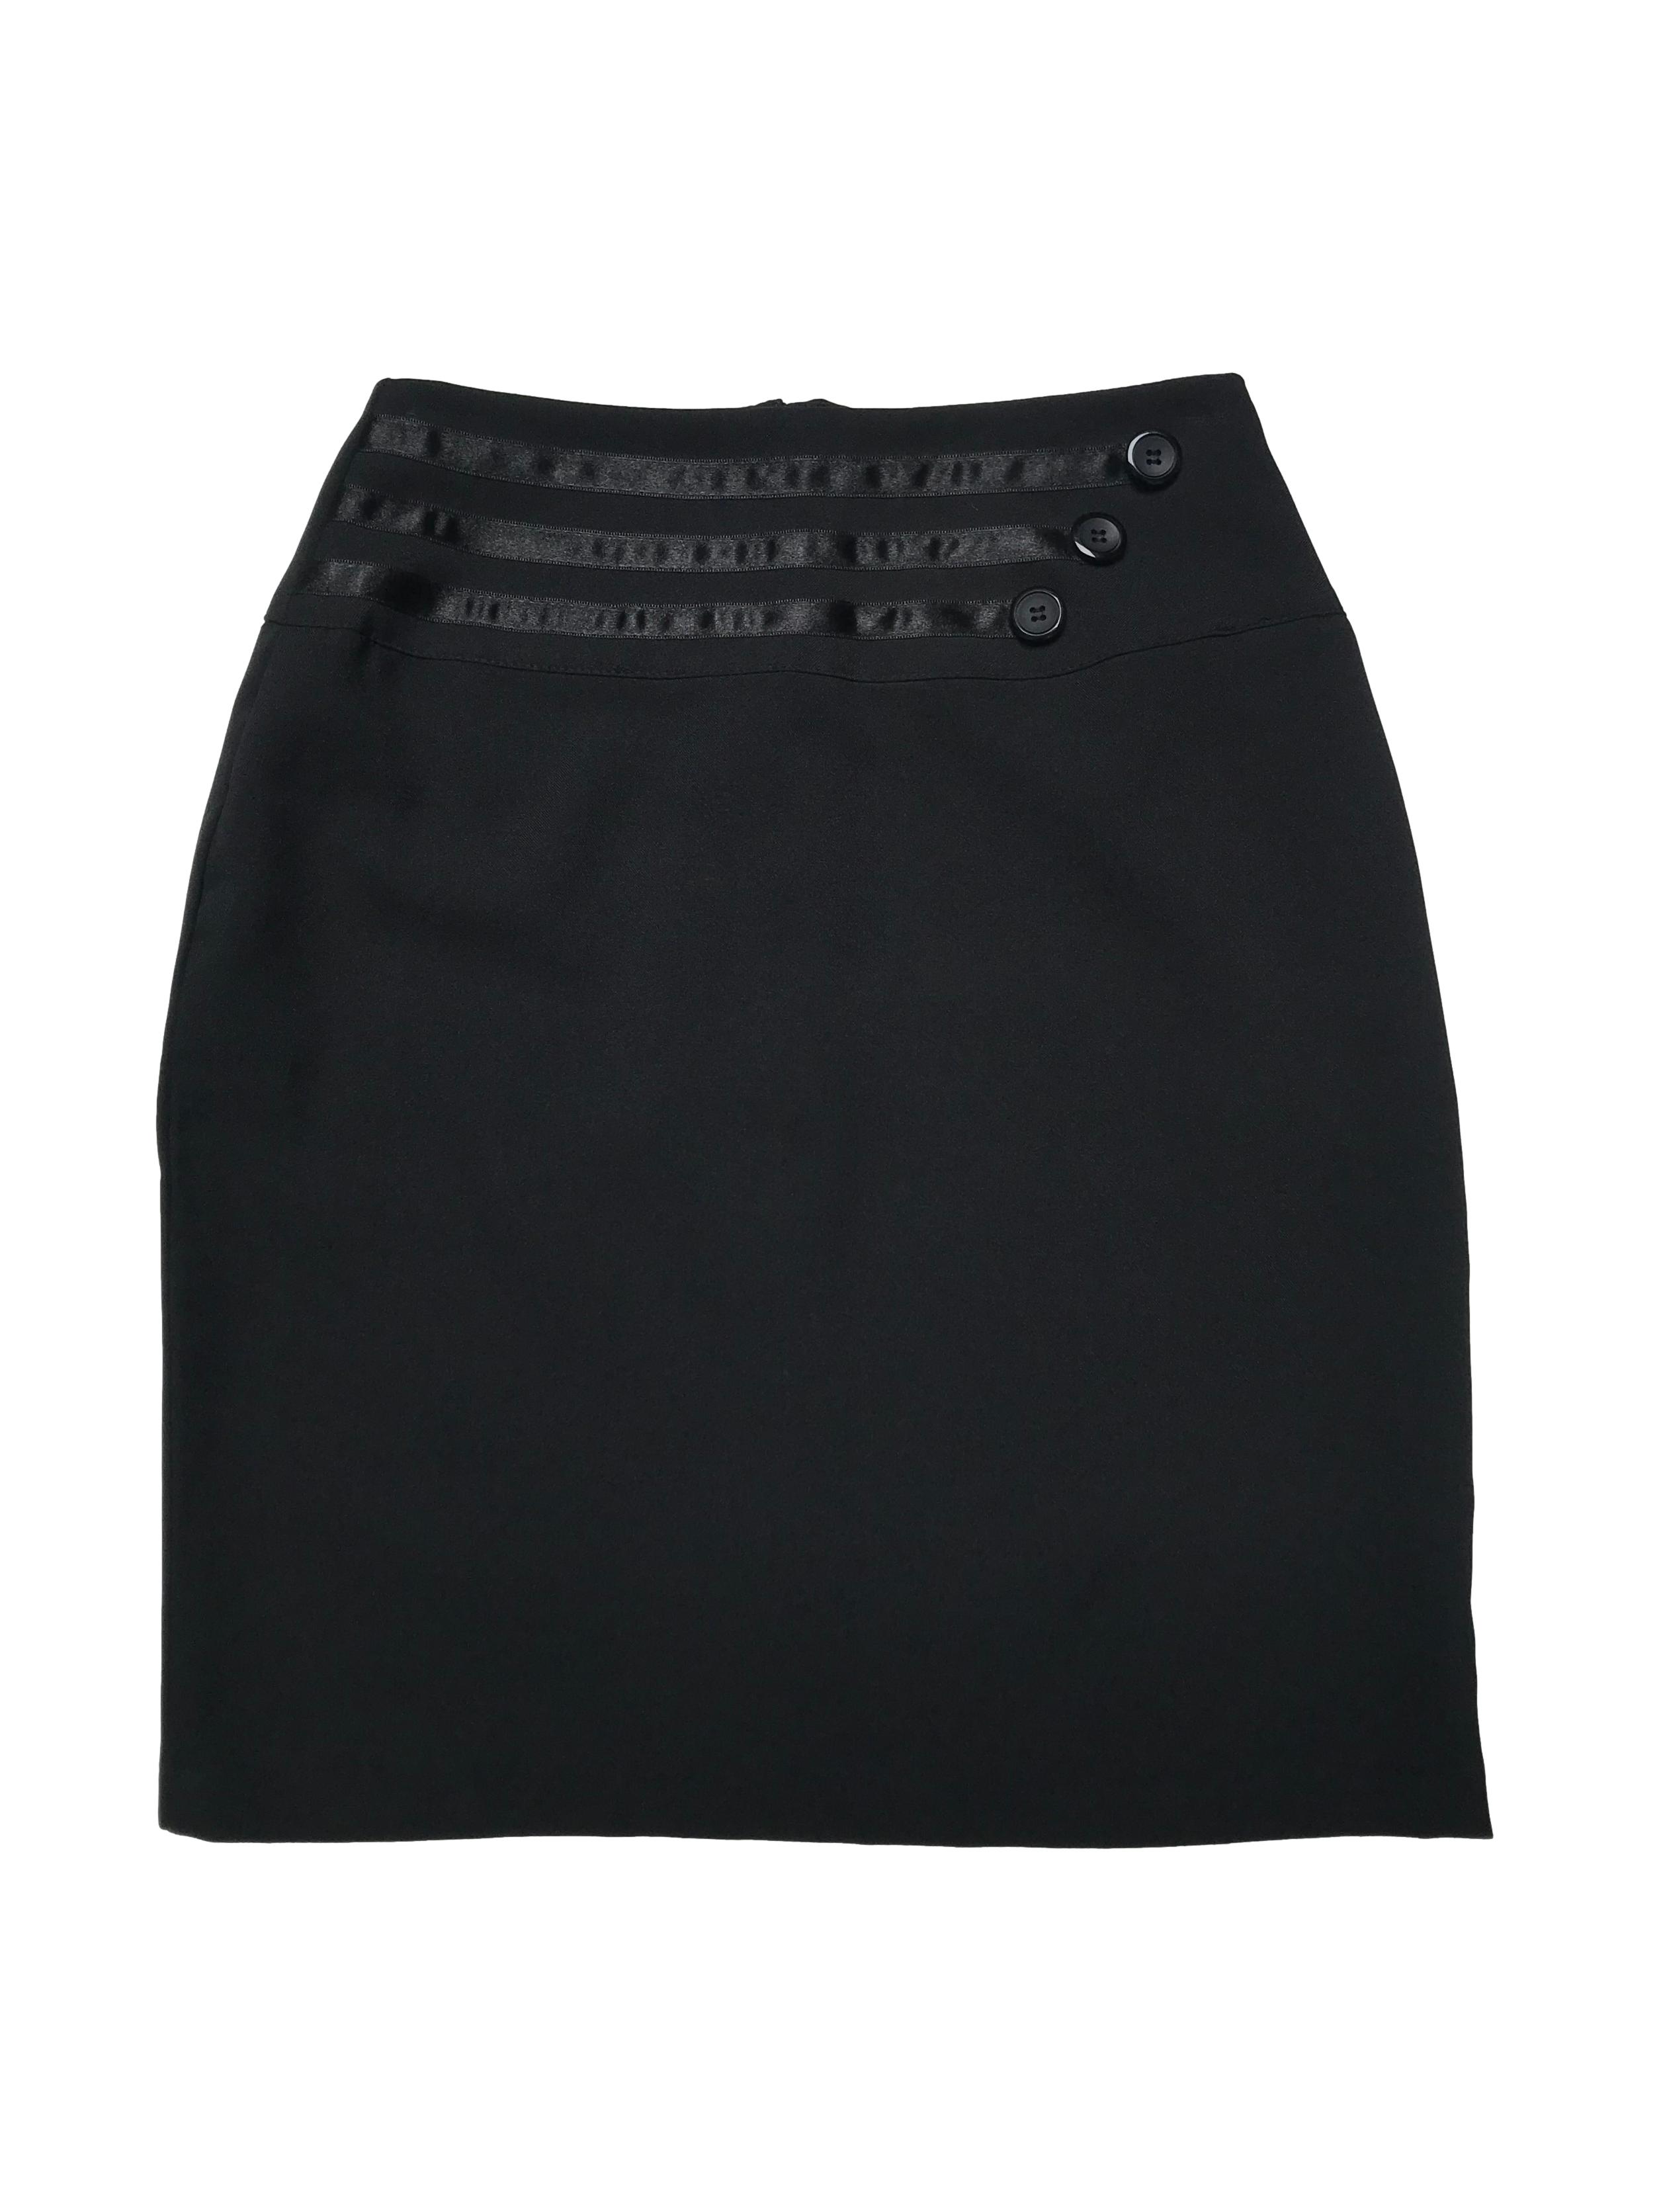 Falda negra tipo sastre, pretina ancha con botones, lleva cierre posterior. Cintura 70cm Largo 52cm